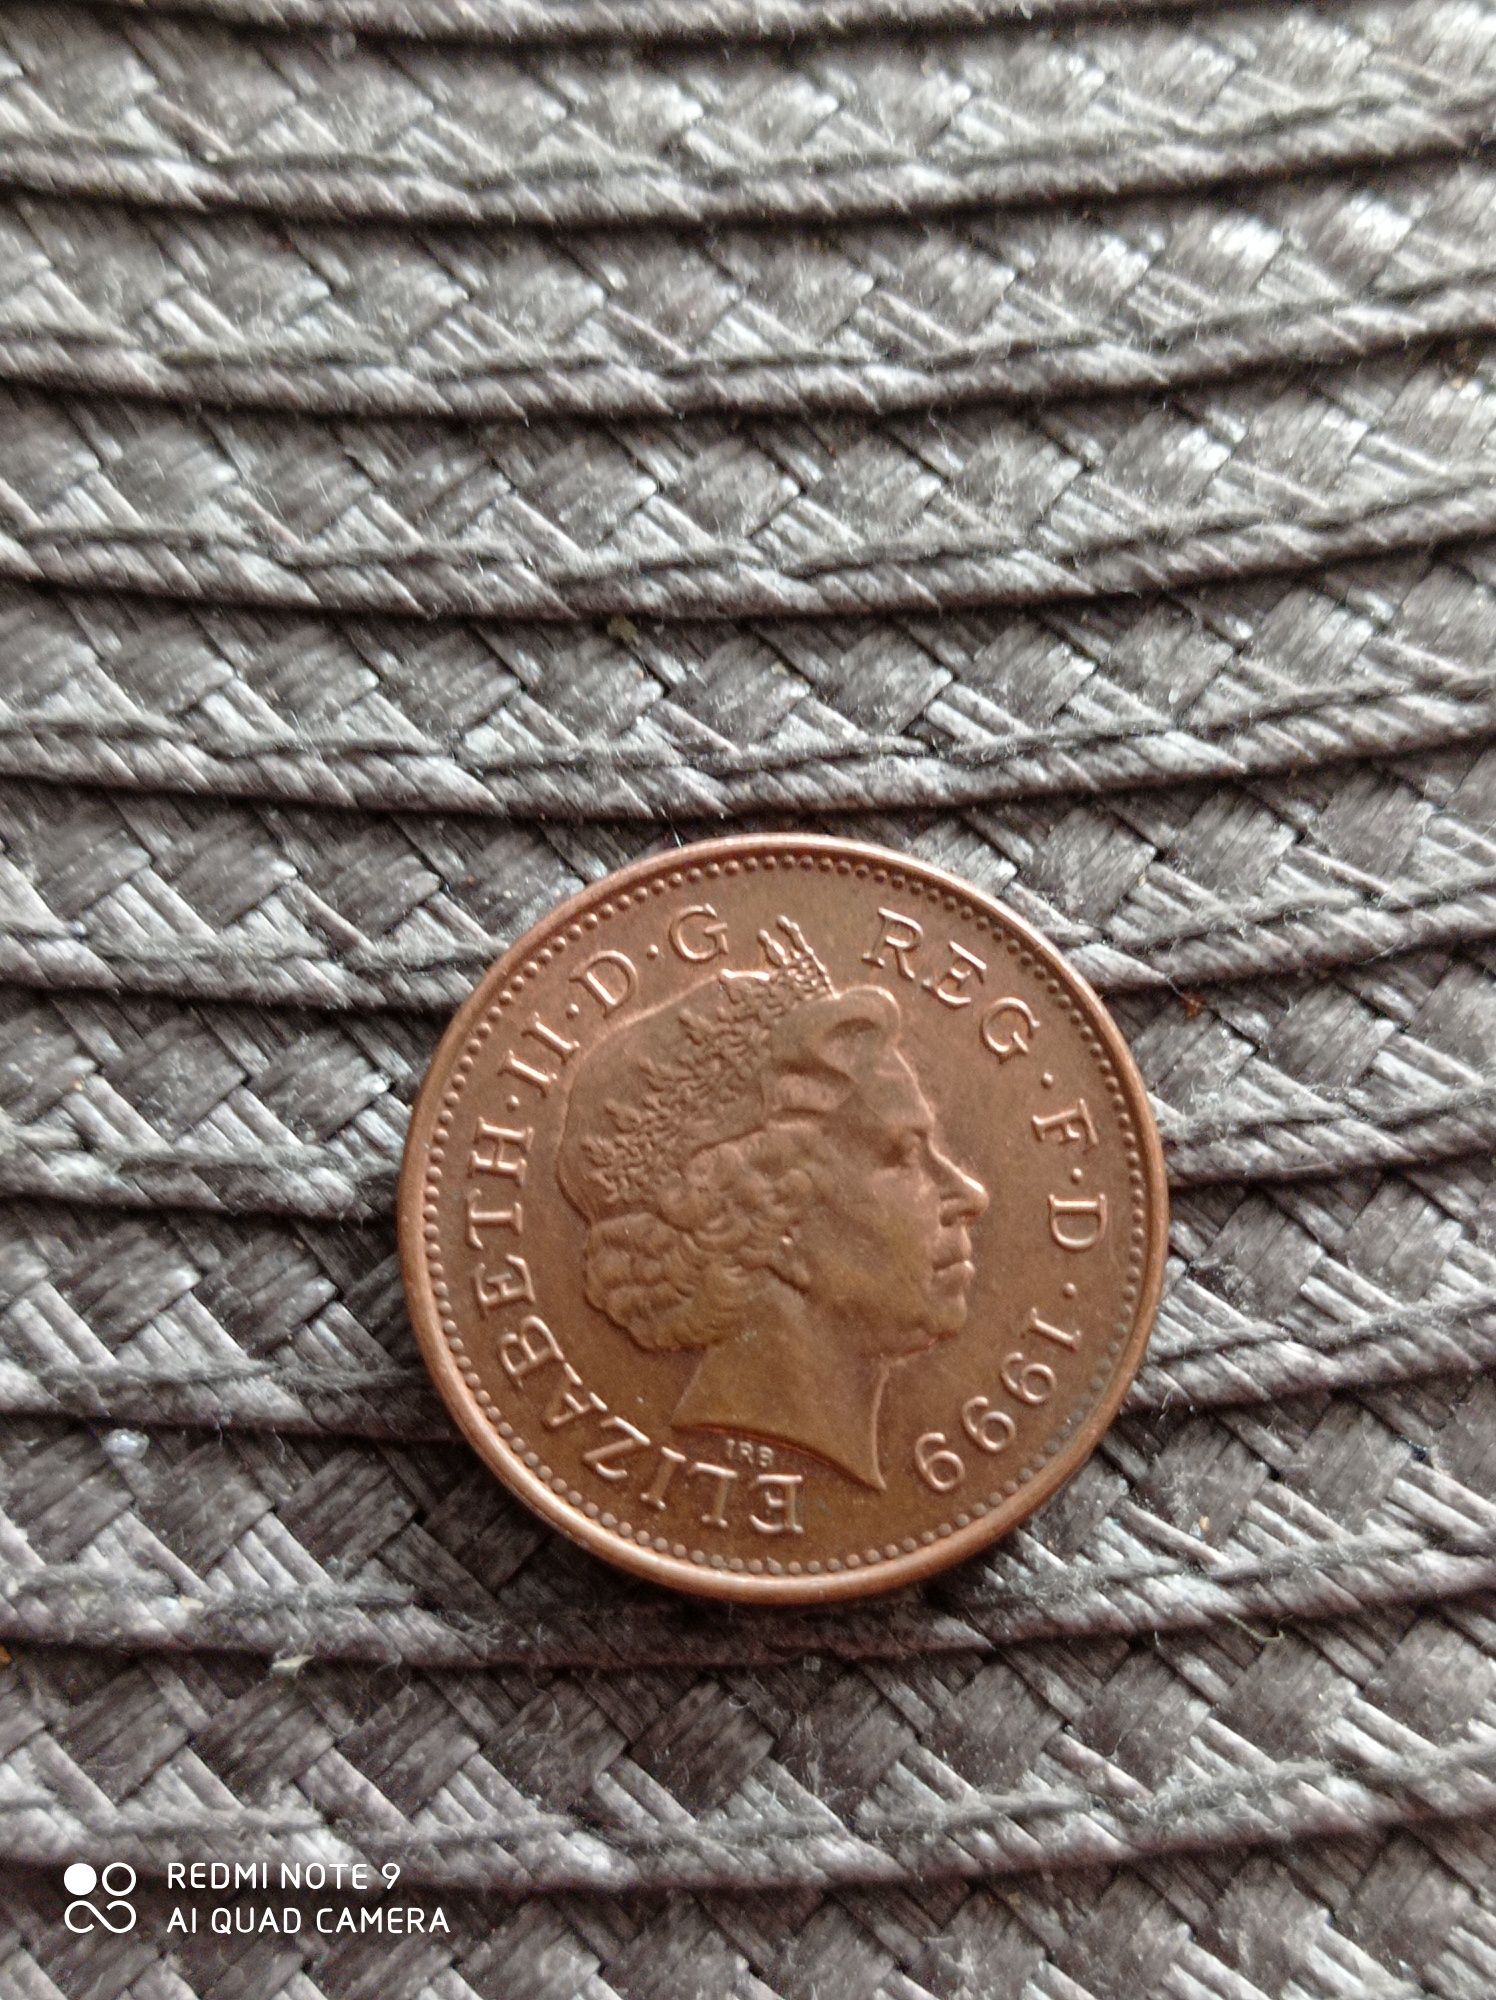 Moneta Elizabeth ll one penny z 1999r